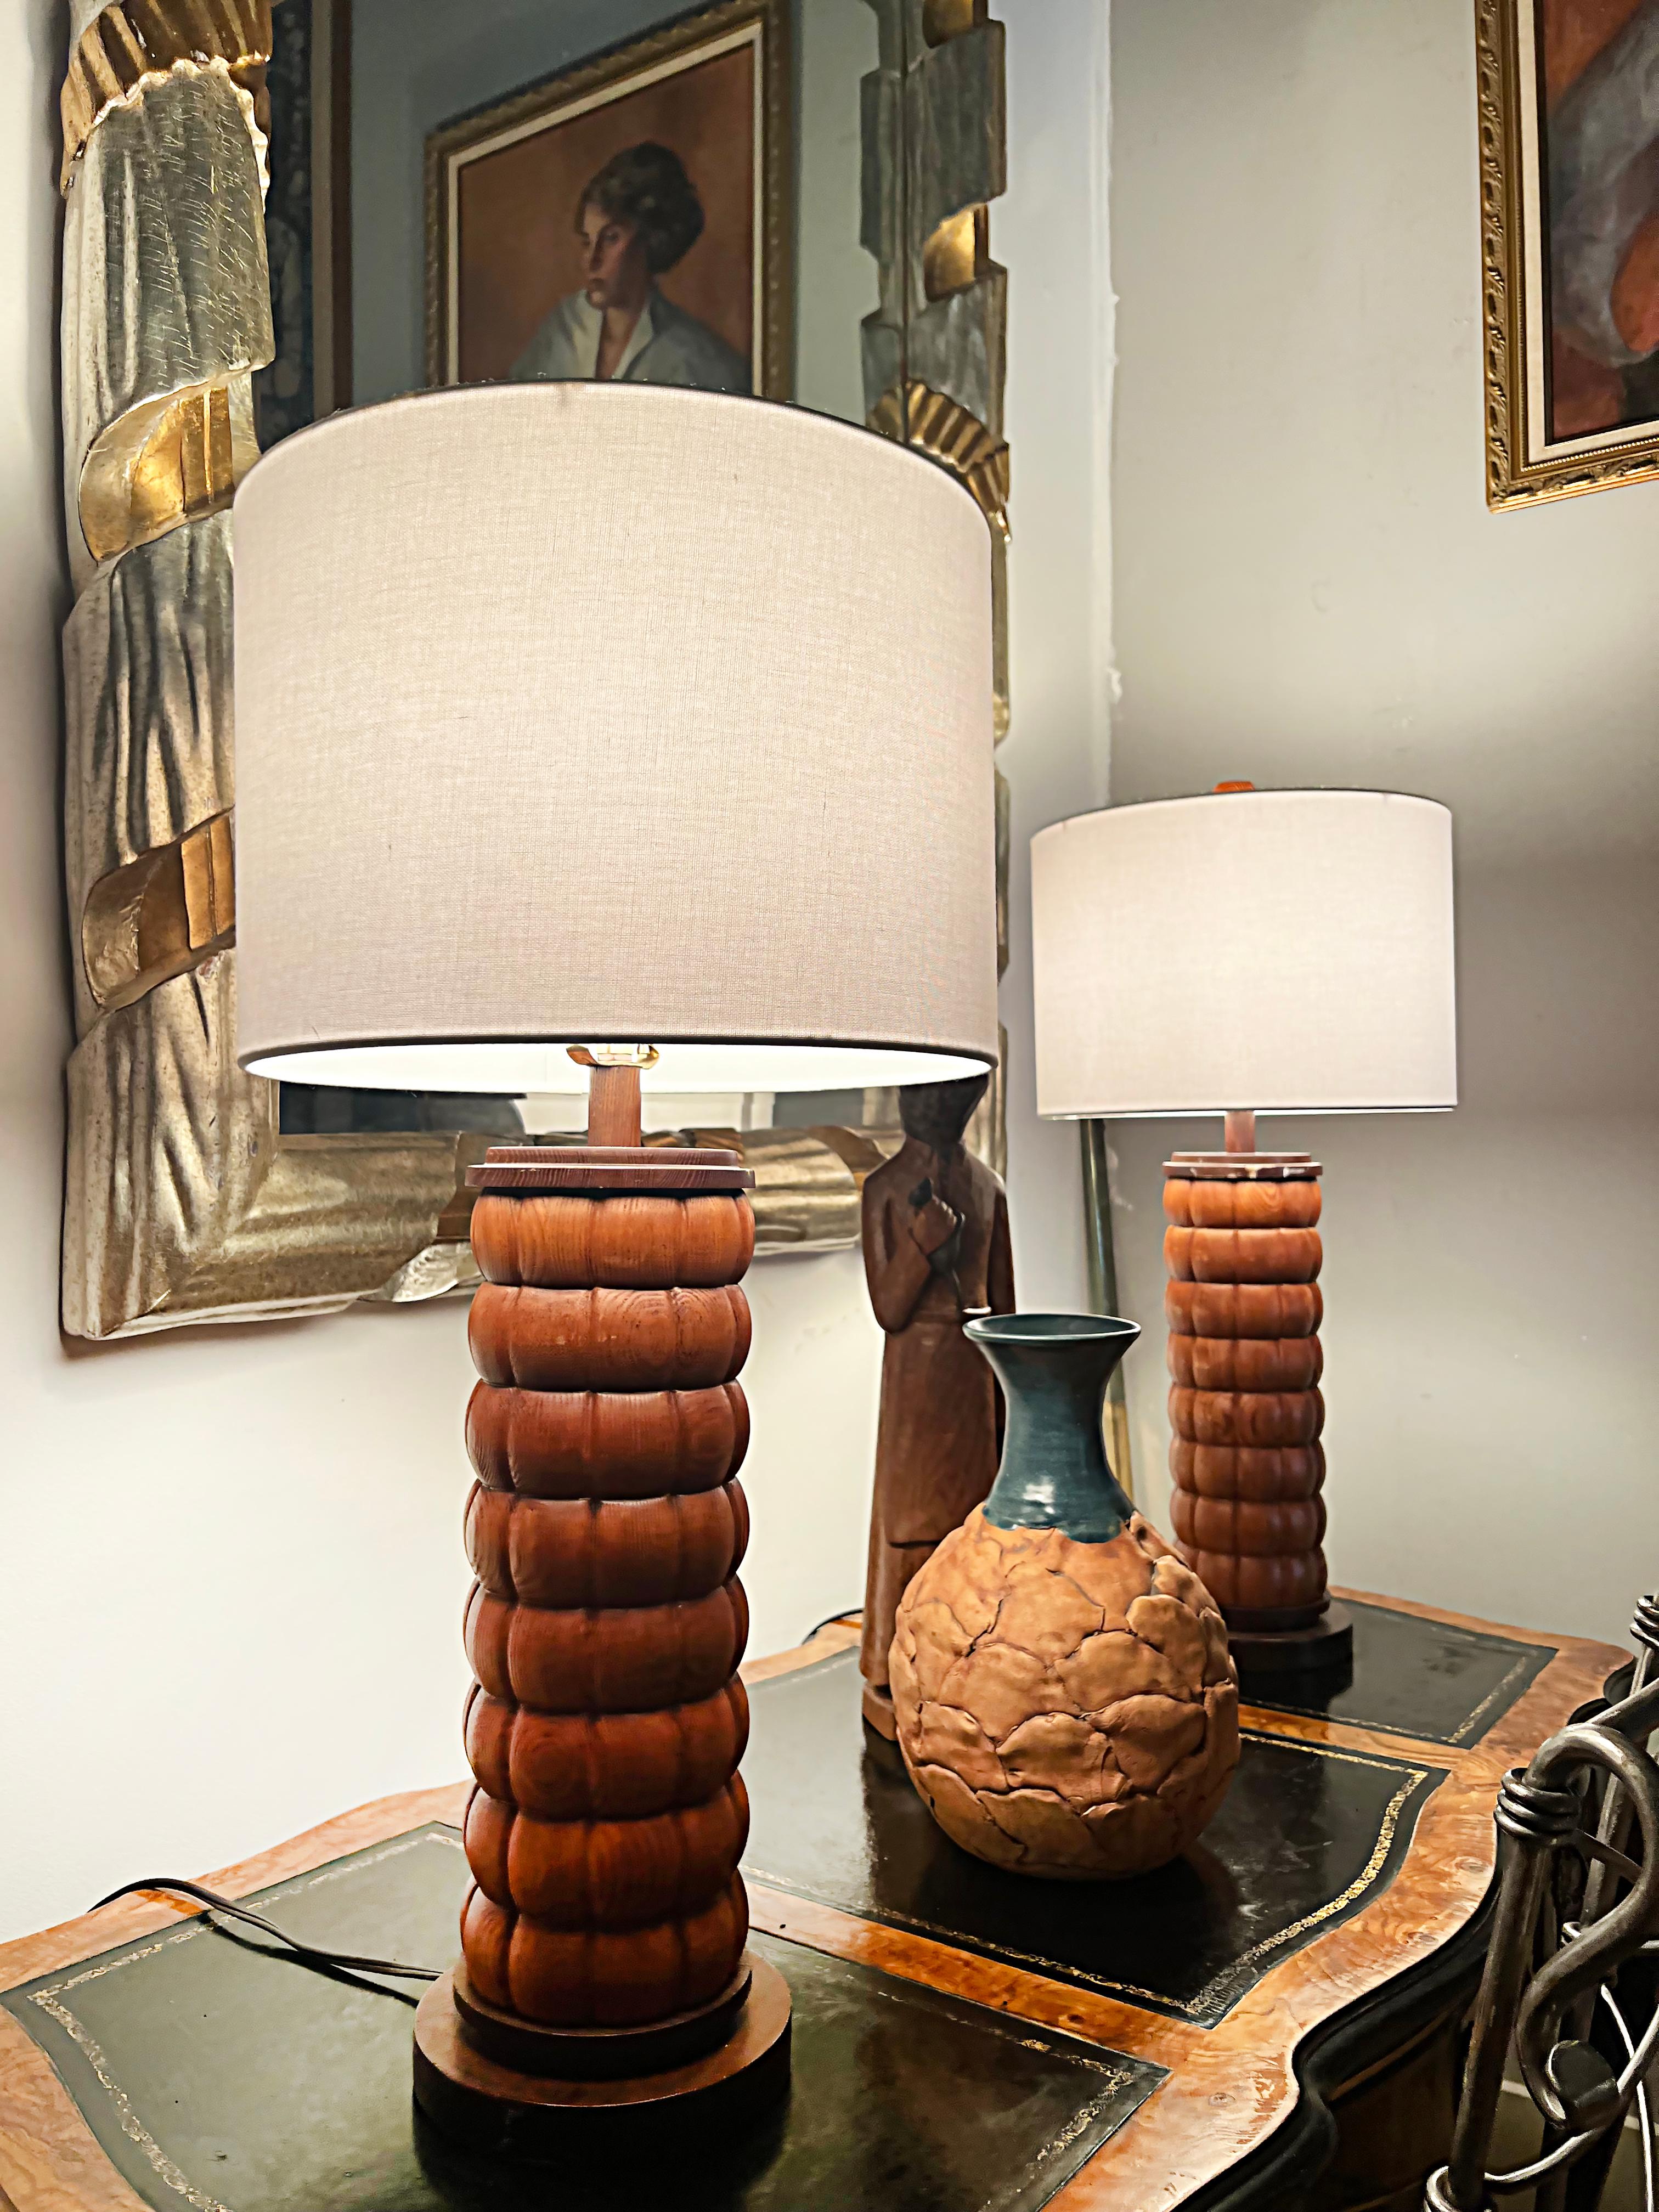 Paire de lampes de table en bois de style moderniste du milieu du siècle, avec nouveaux abat-jour.

Nous proposons à la vente une paire de lampes de table à colonne en bois sculpté, de style moderniste du milieu du siècle, qui ont été équipées